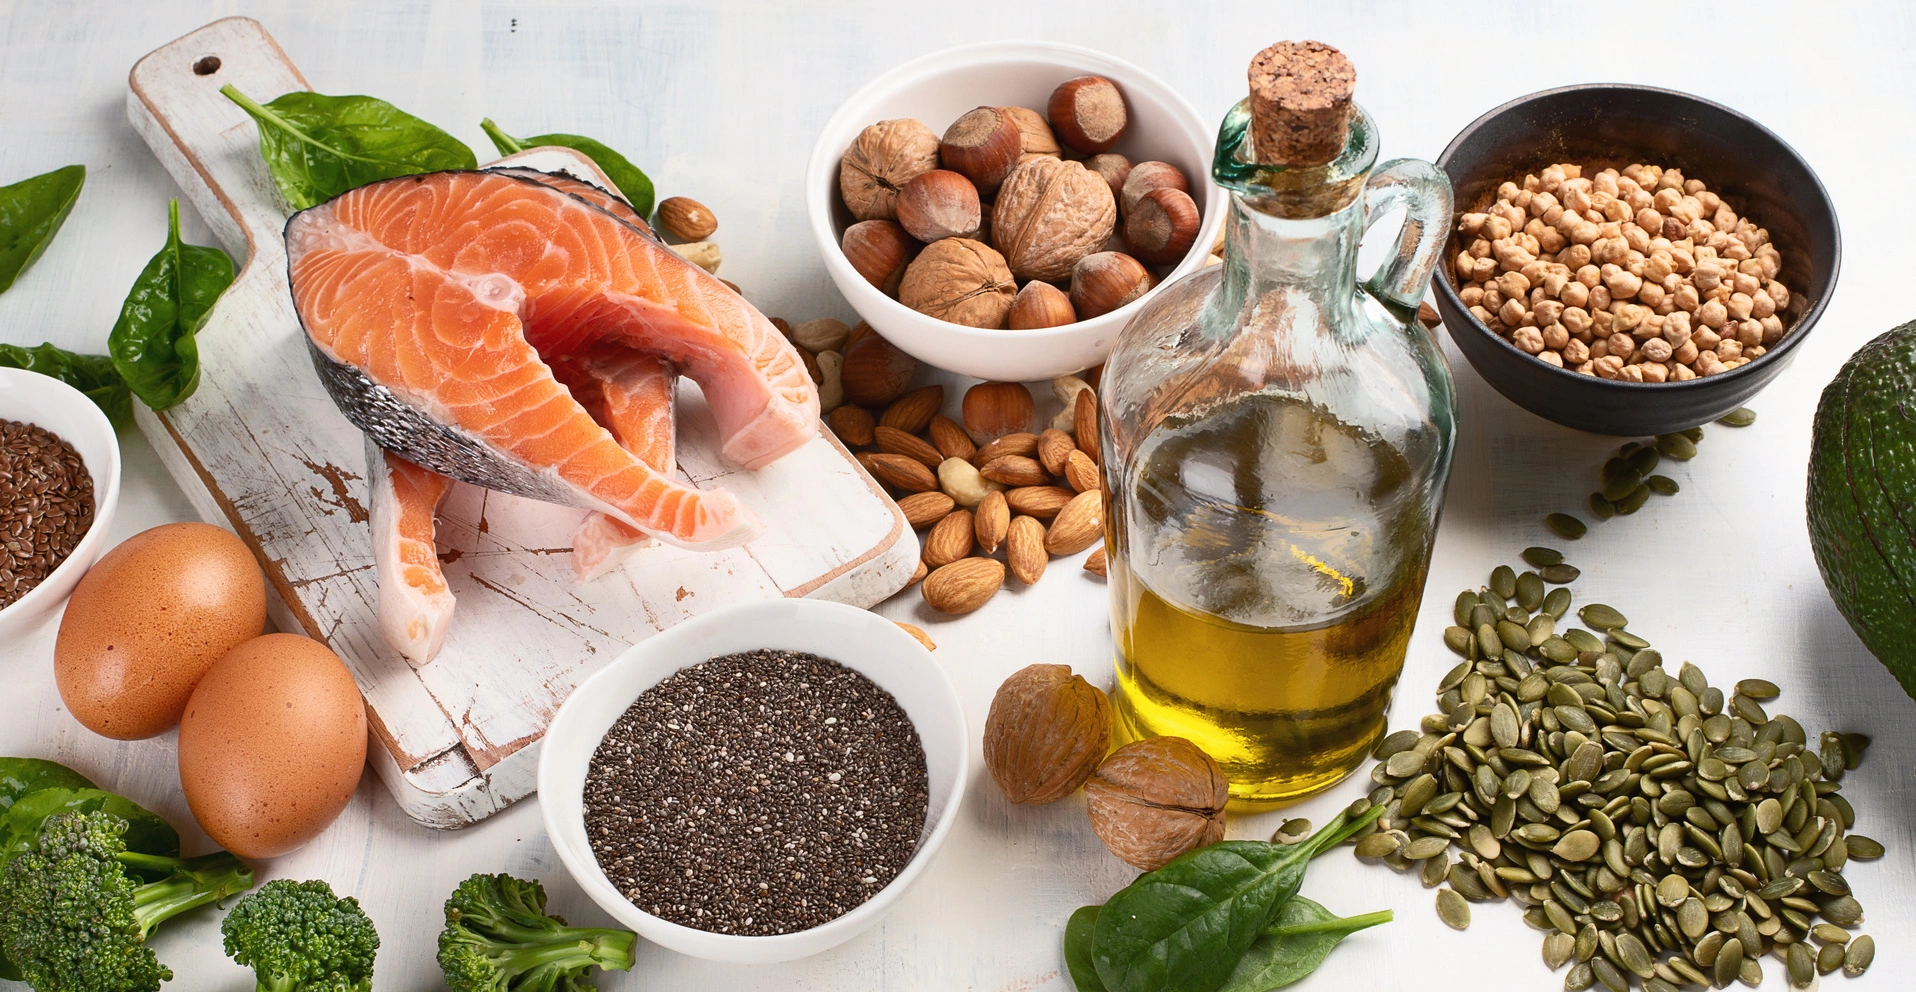 Jaki olej ma najwięcej kwasów omega-3? Źródła omega-3 w pożywieniu na białym blacie - oleje, nasiona, ryby.